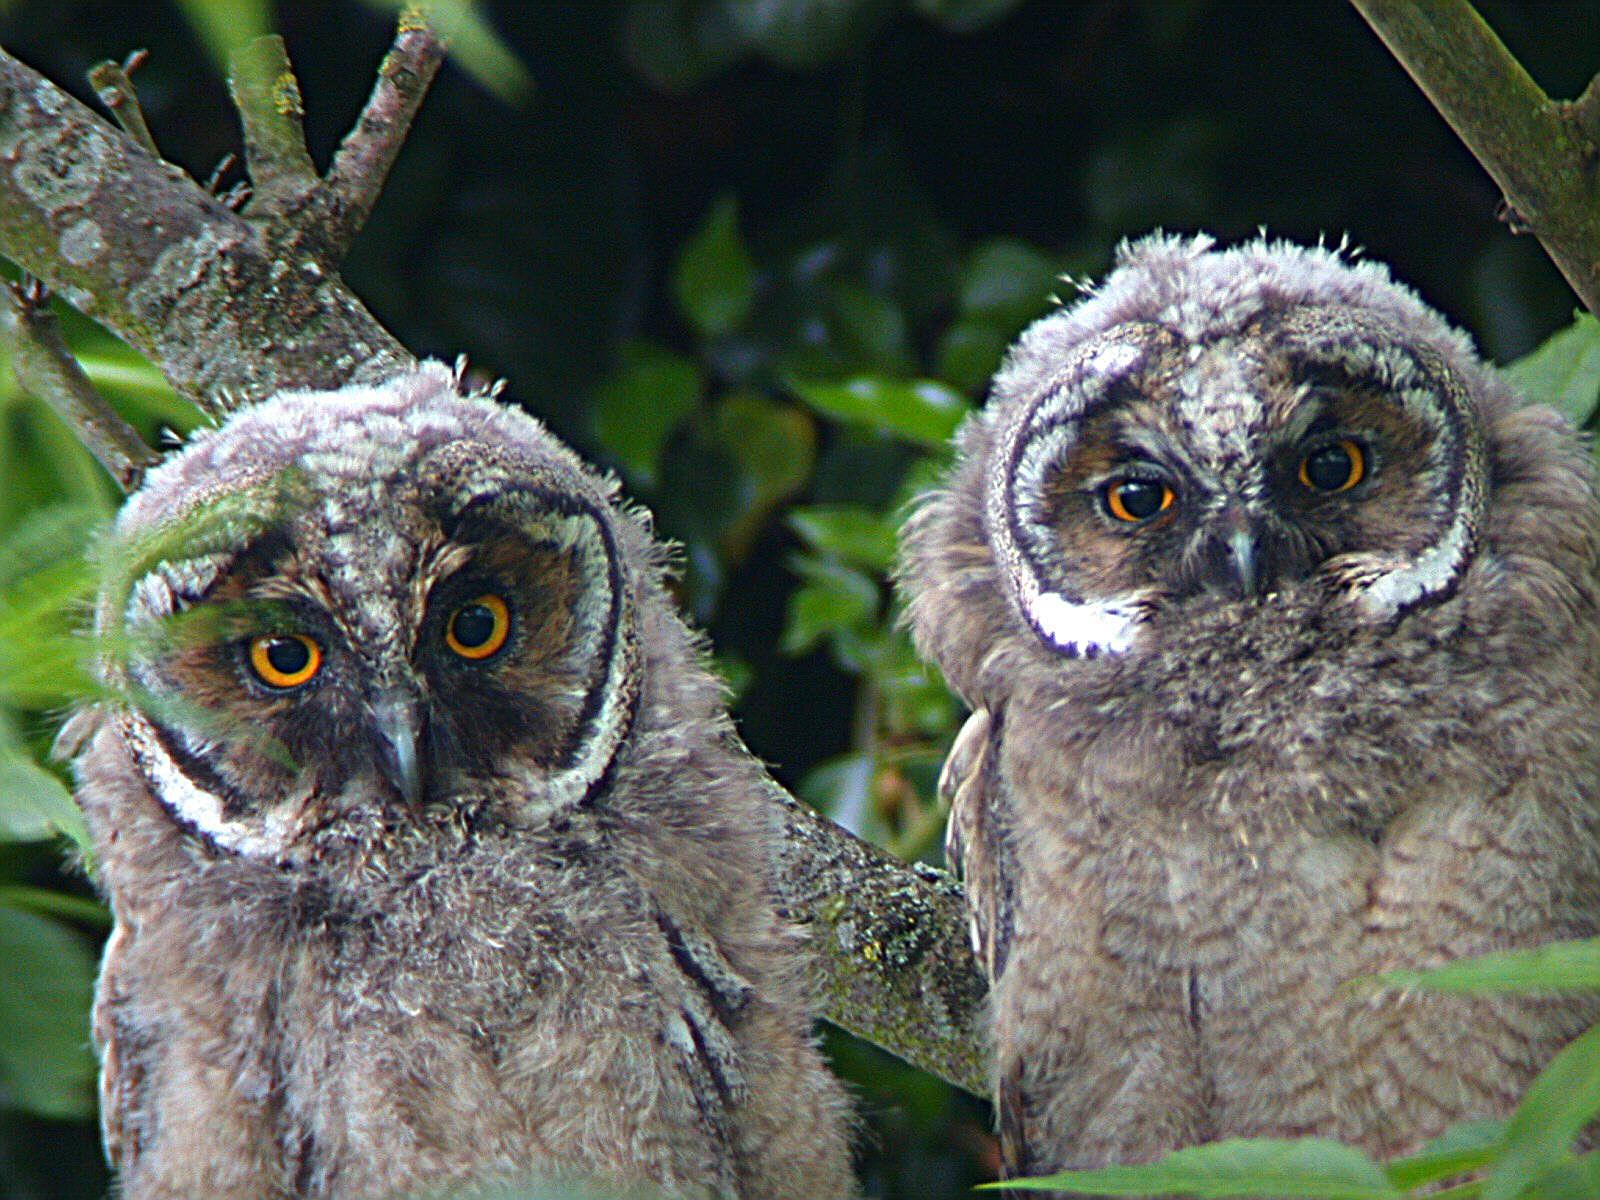 long-eared-owl-chicks-side-by-side-in-tree